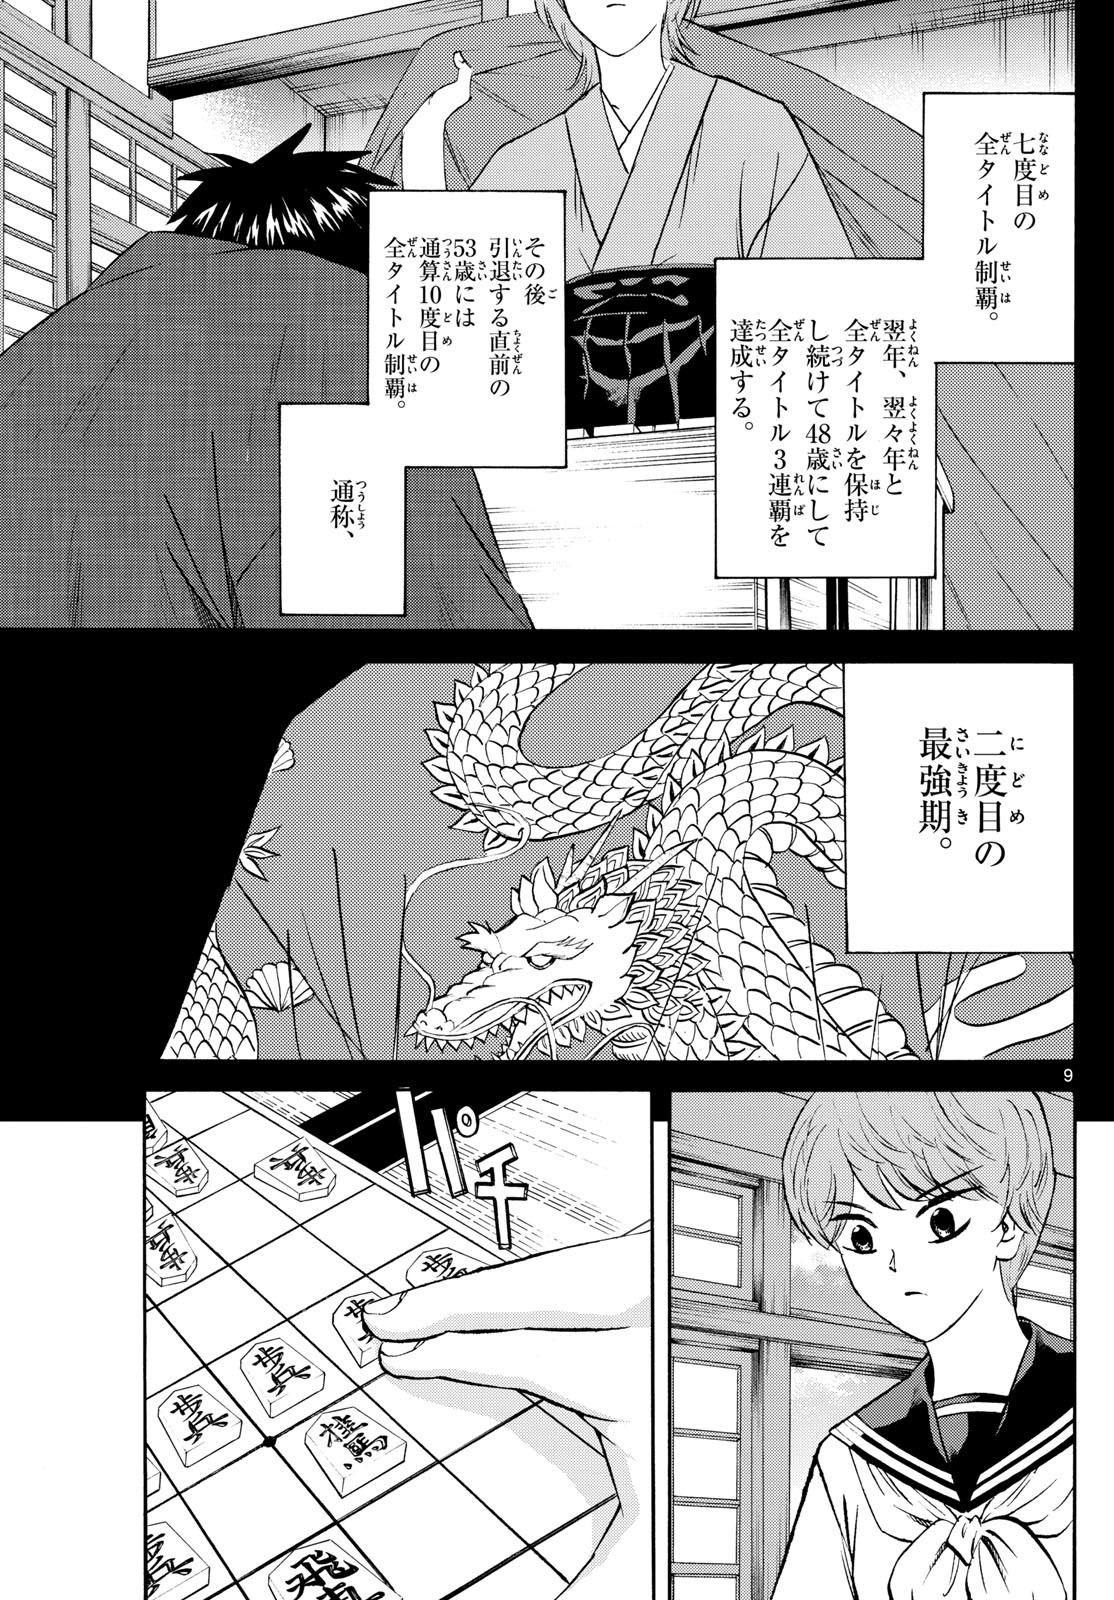 Ryu-to-Ichigo - Chapter 200 - Page 9